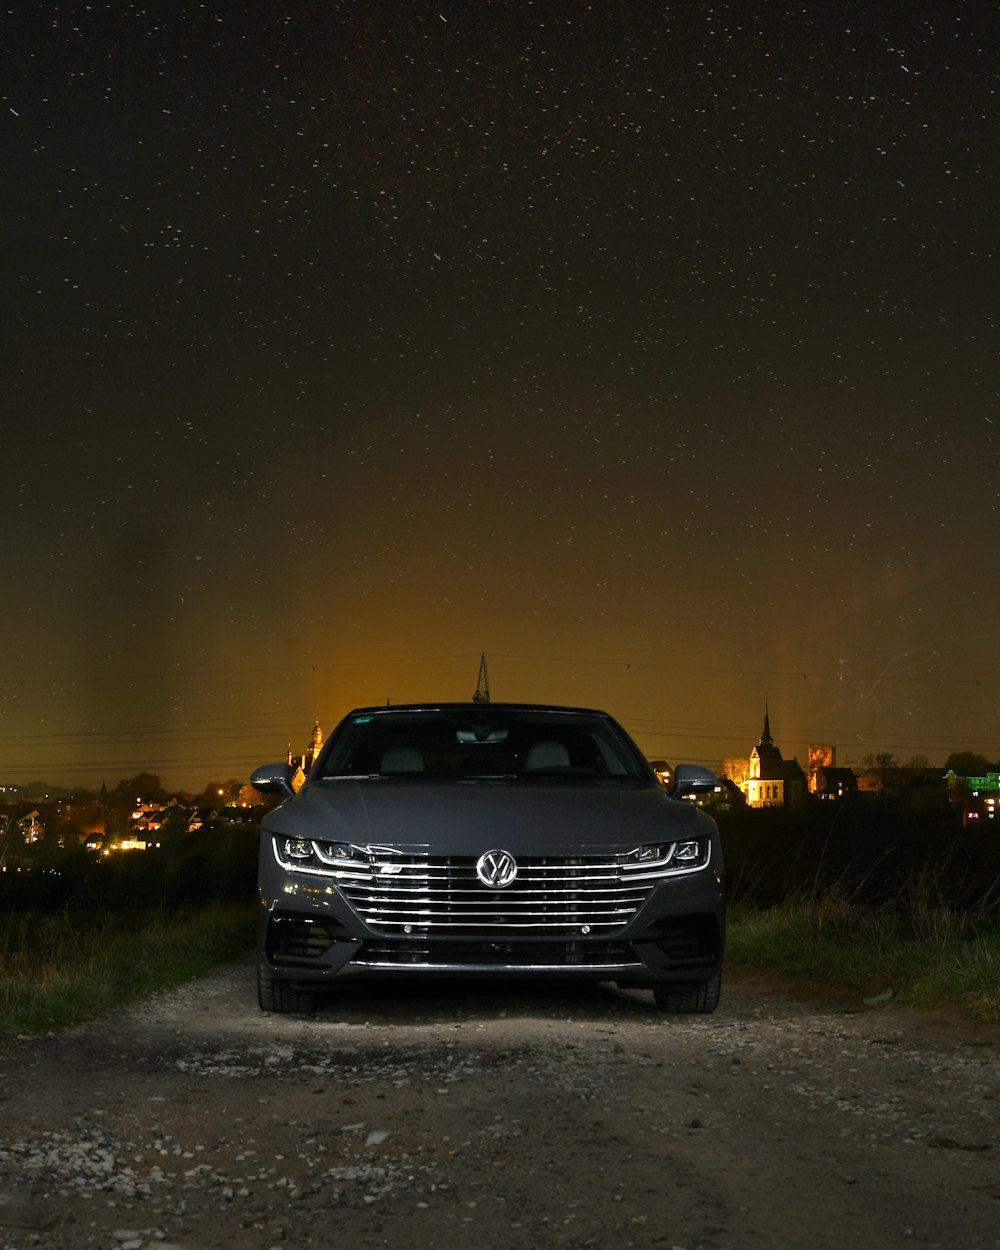 voiture noire sur la route pendant la nuit